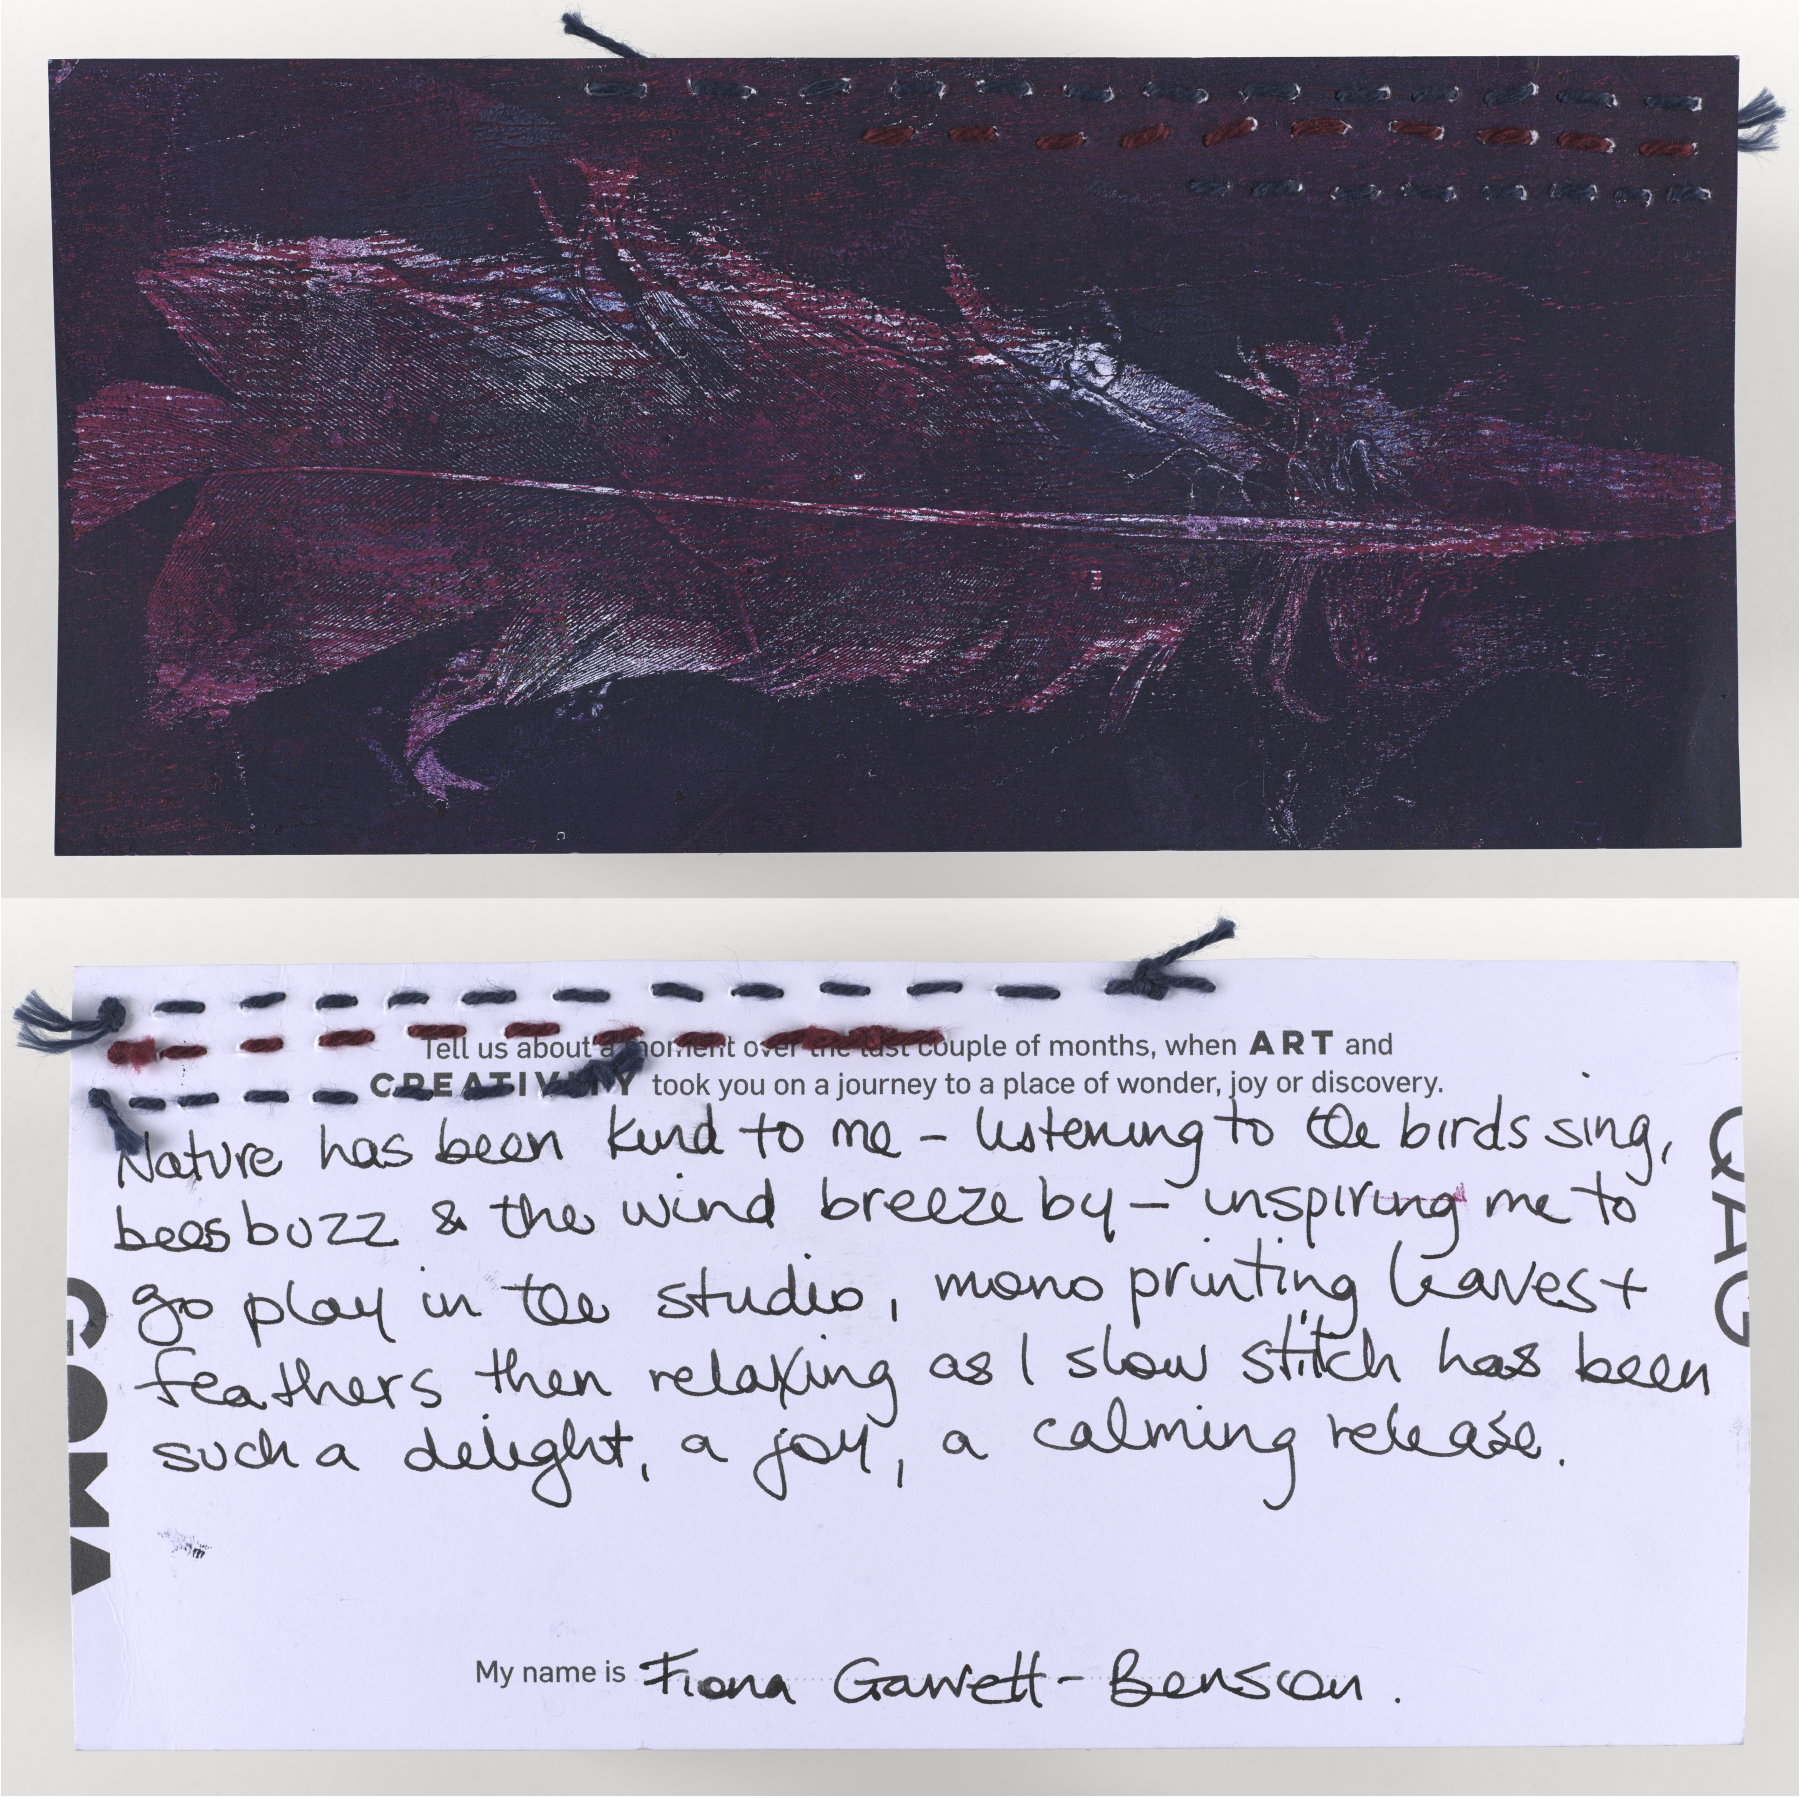 Generated image of the artwork: Fiona Gawett-Benson